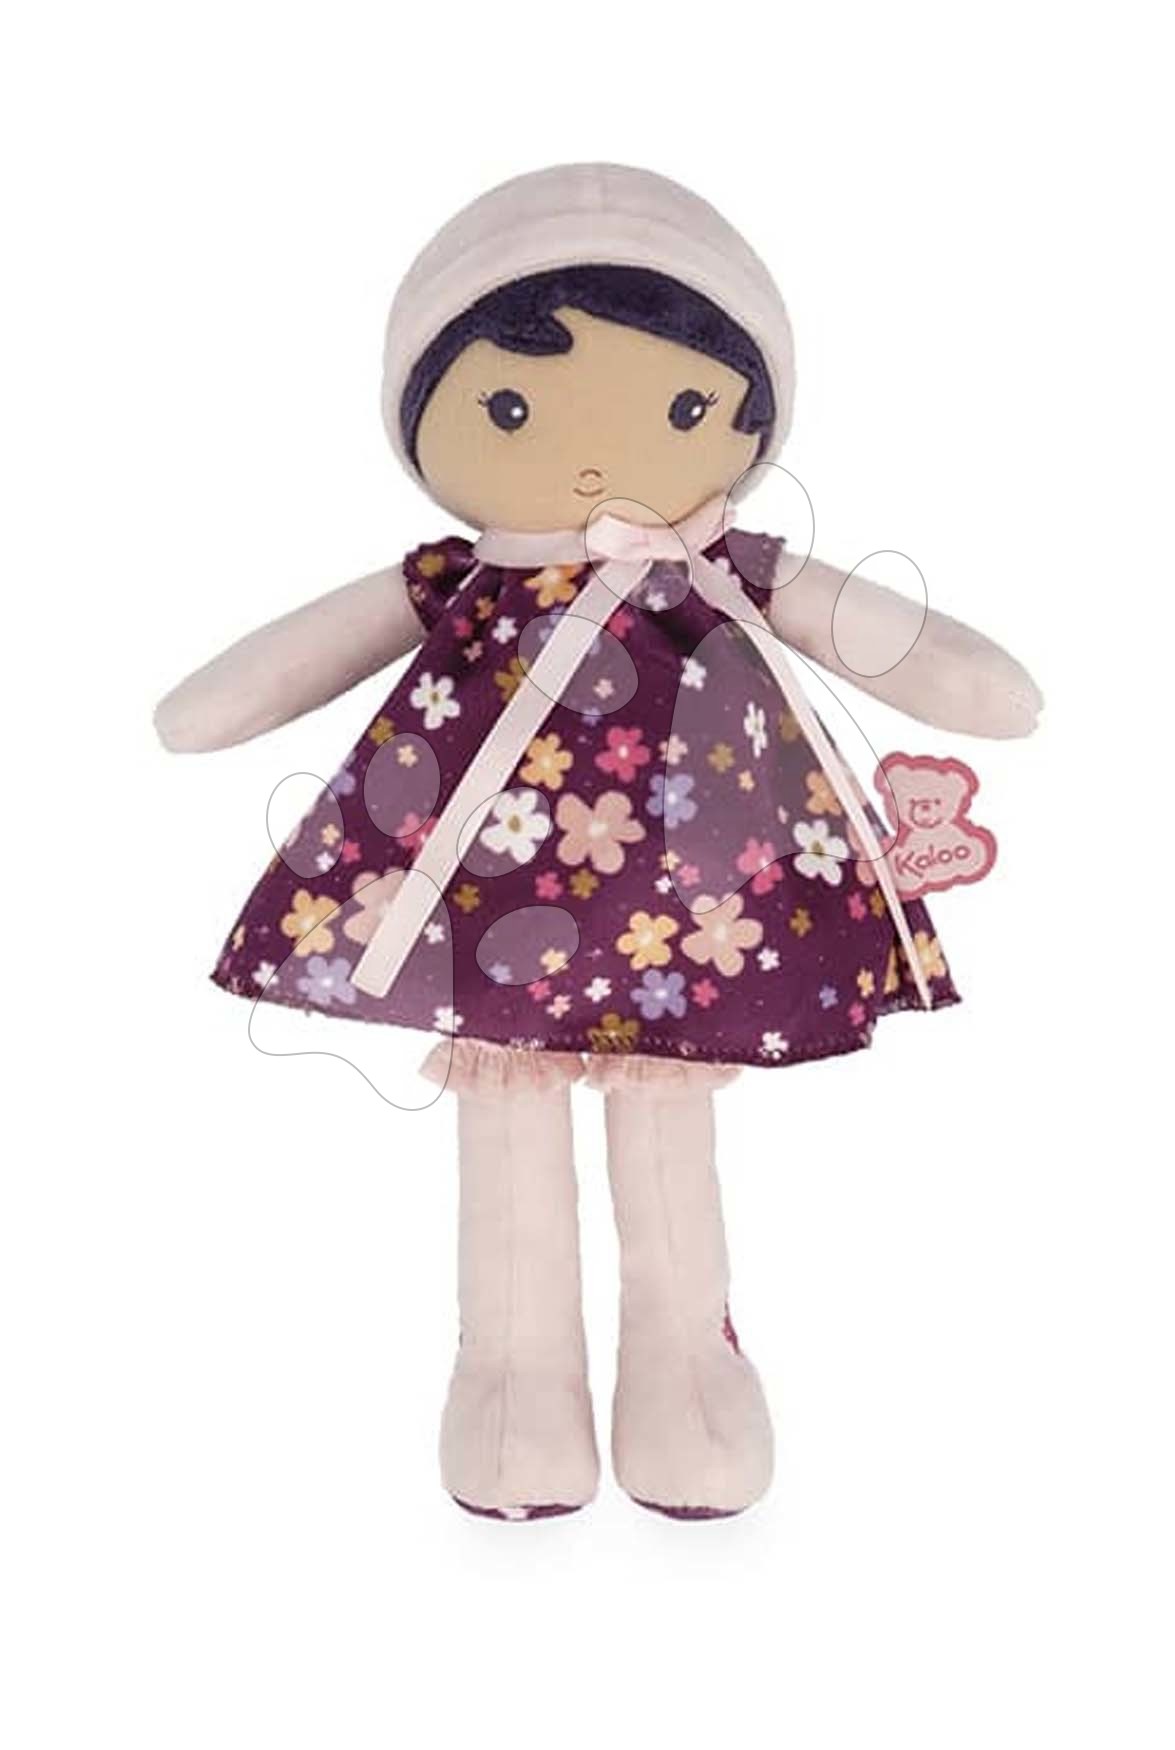 Handrové bábiky - Bábika pre bábätká Violette Doll Tendresse Kaloo 25 cm vo fialových šatách z jemného textilu od 0 mes